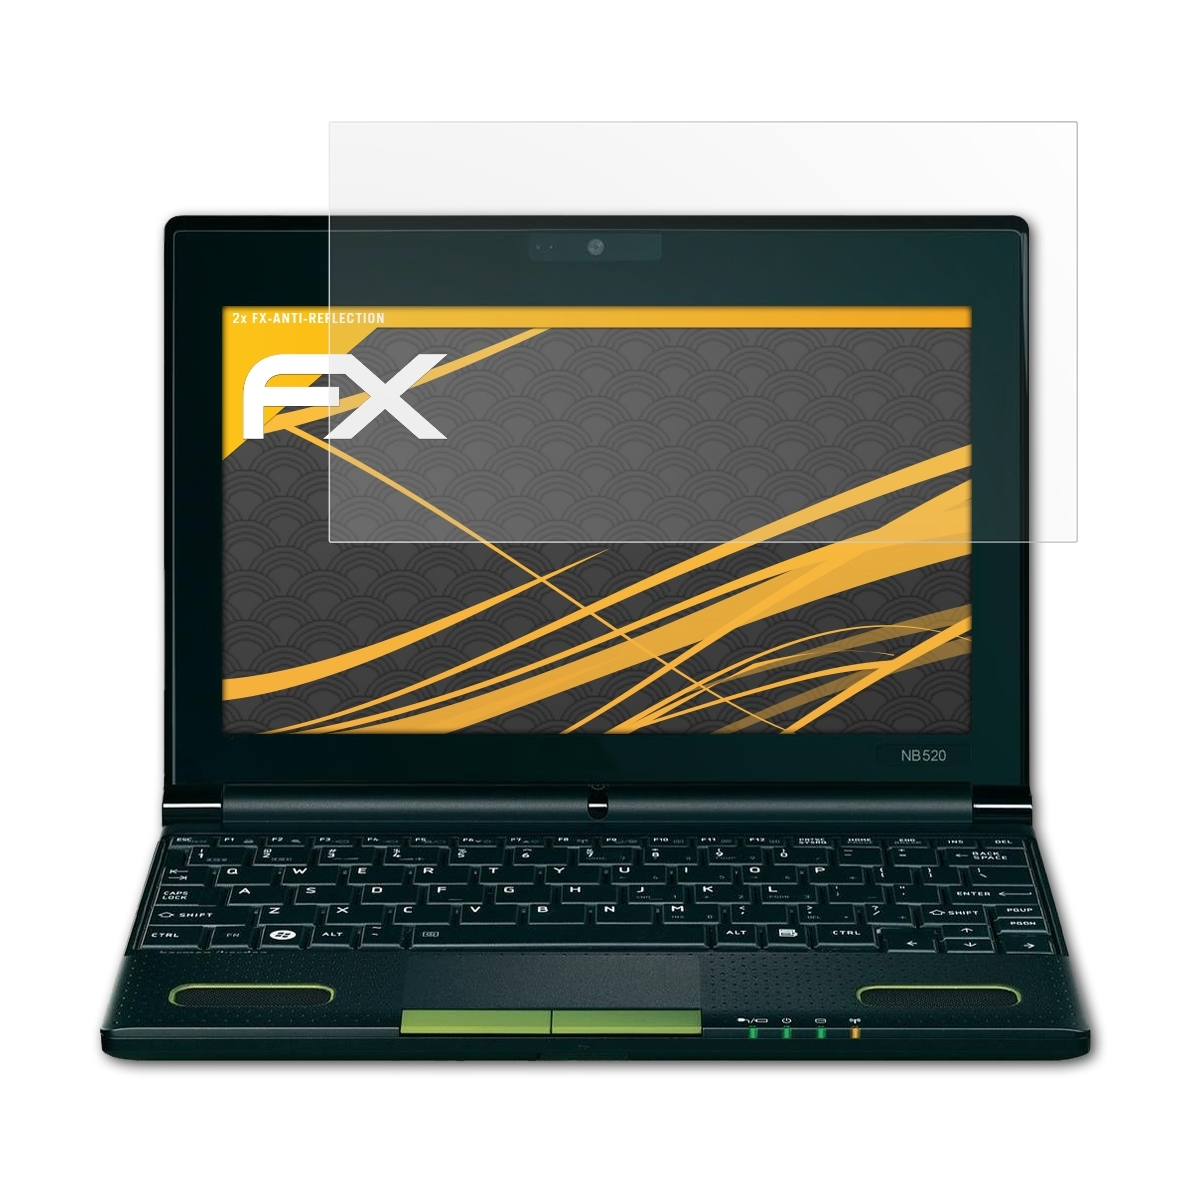 FX-Antireflex ATFOLIX Toshiba Displayschutz(für 2x NB550D-111)